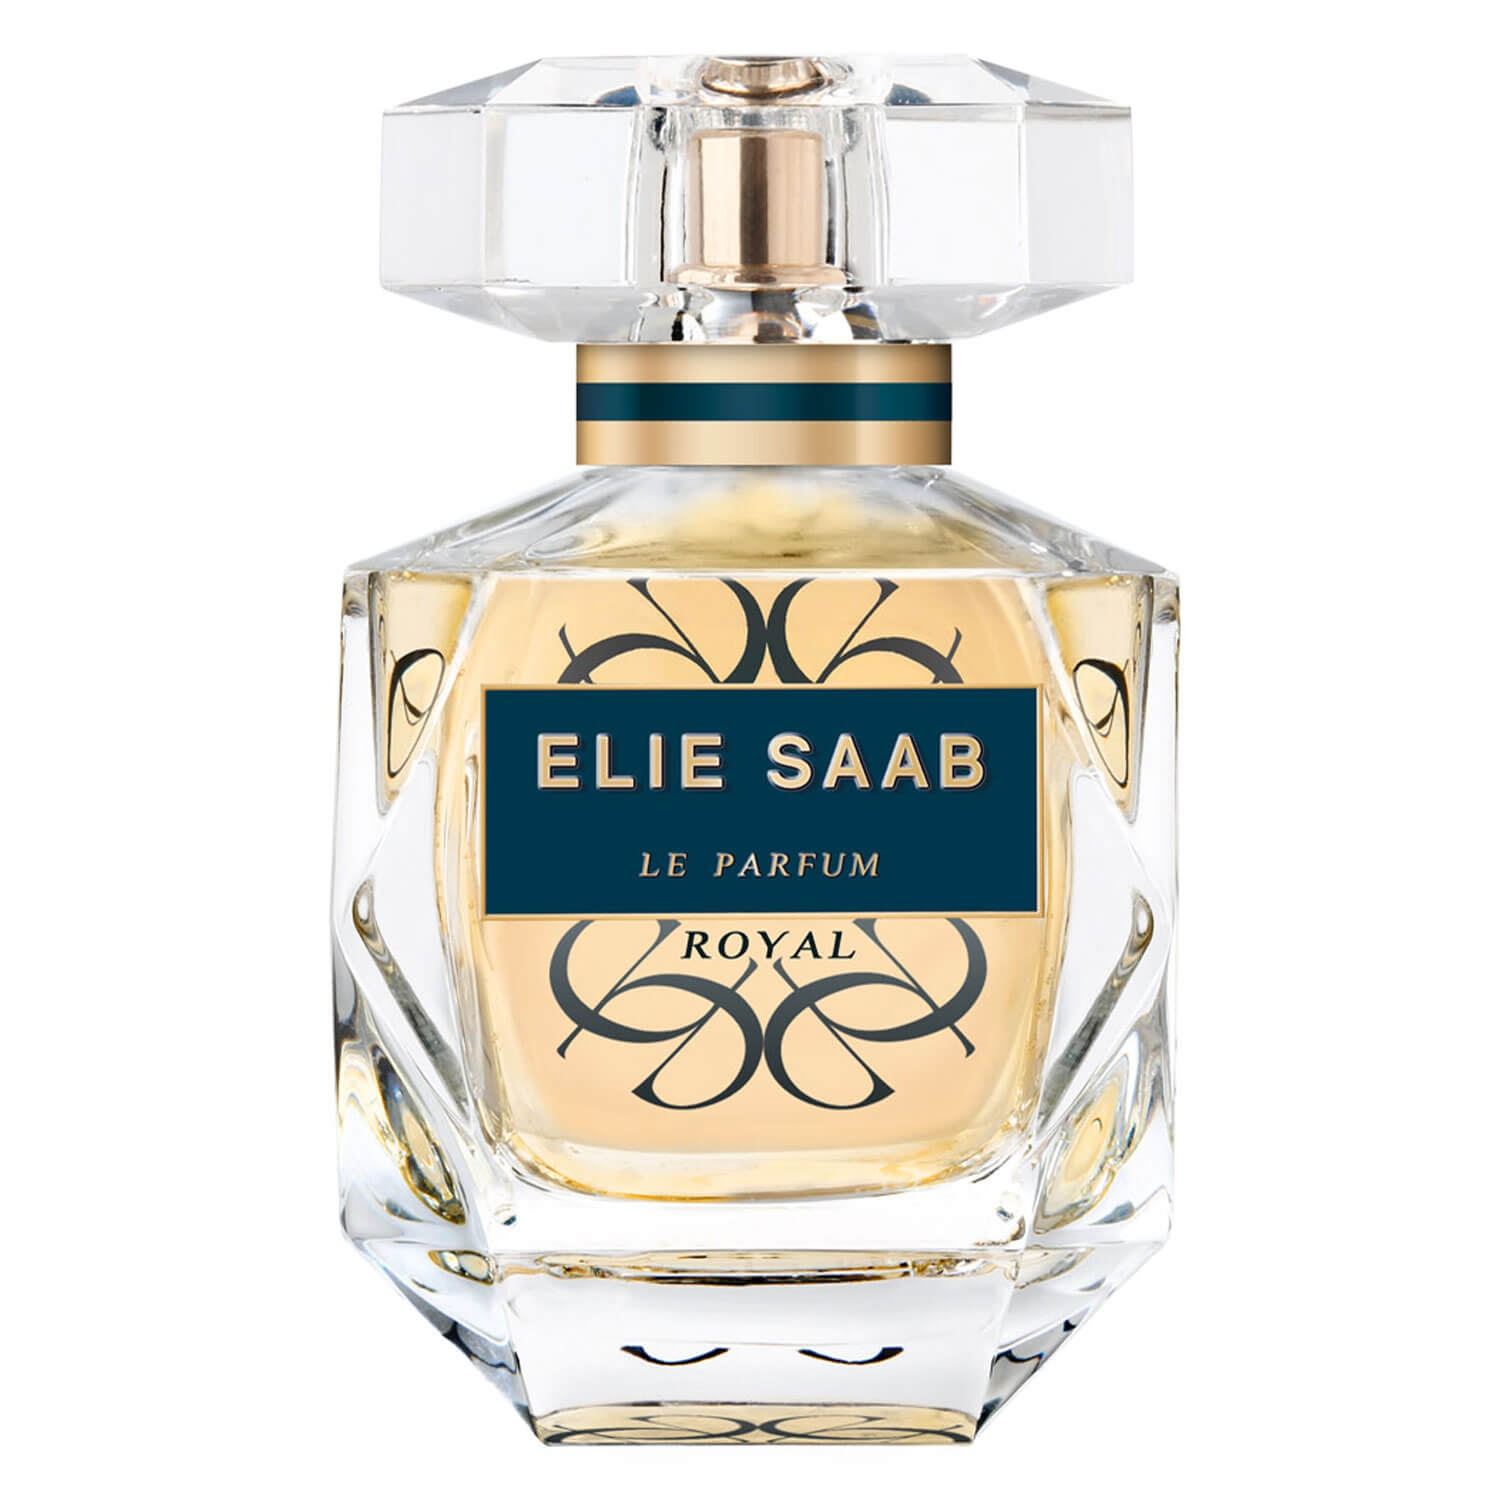 Product image from Le Parfum - Royal Eau de Parfum